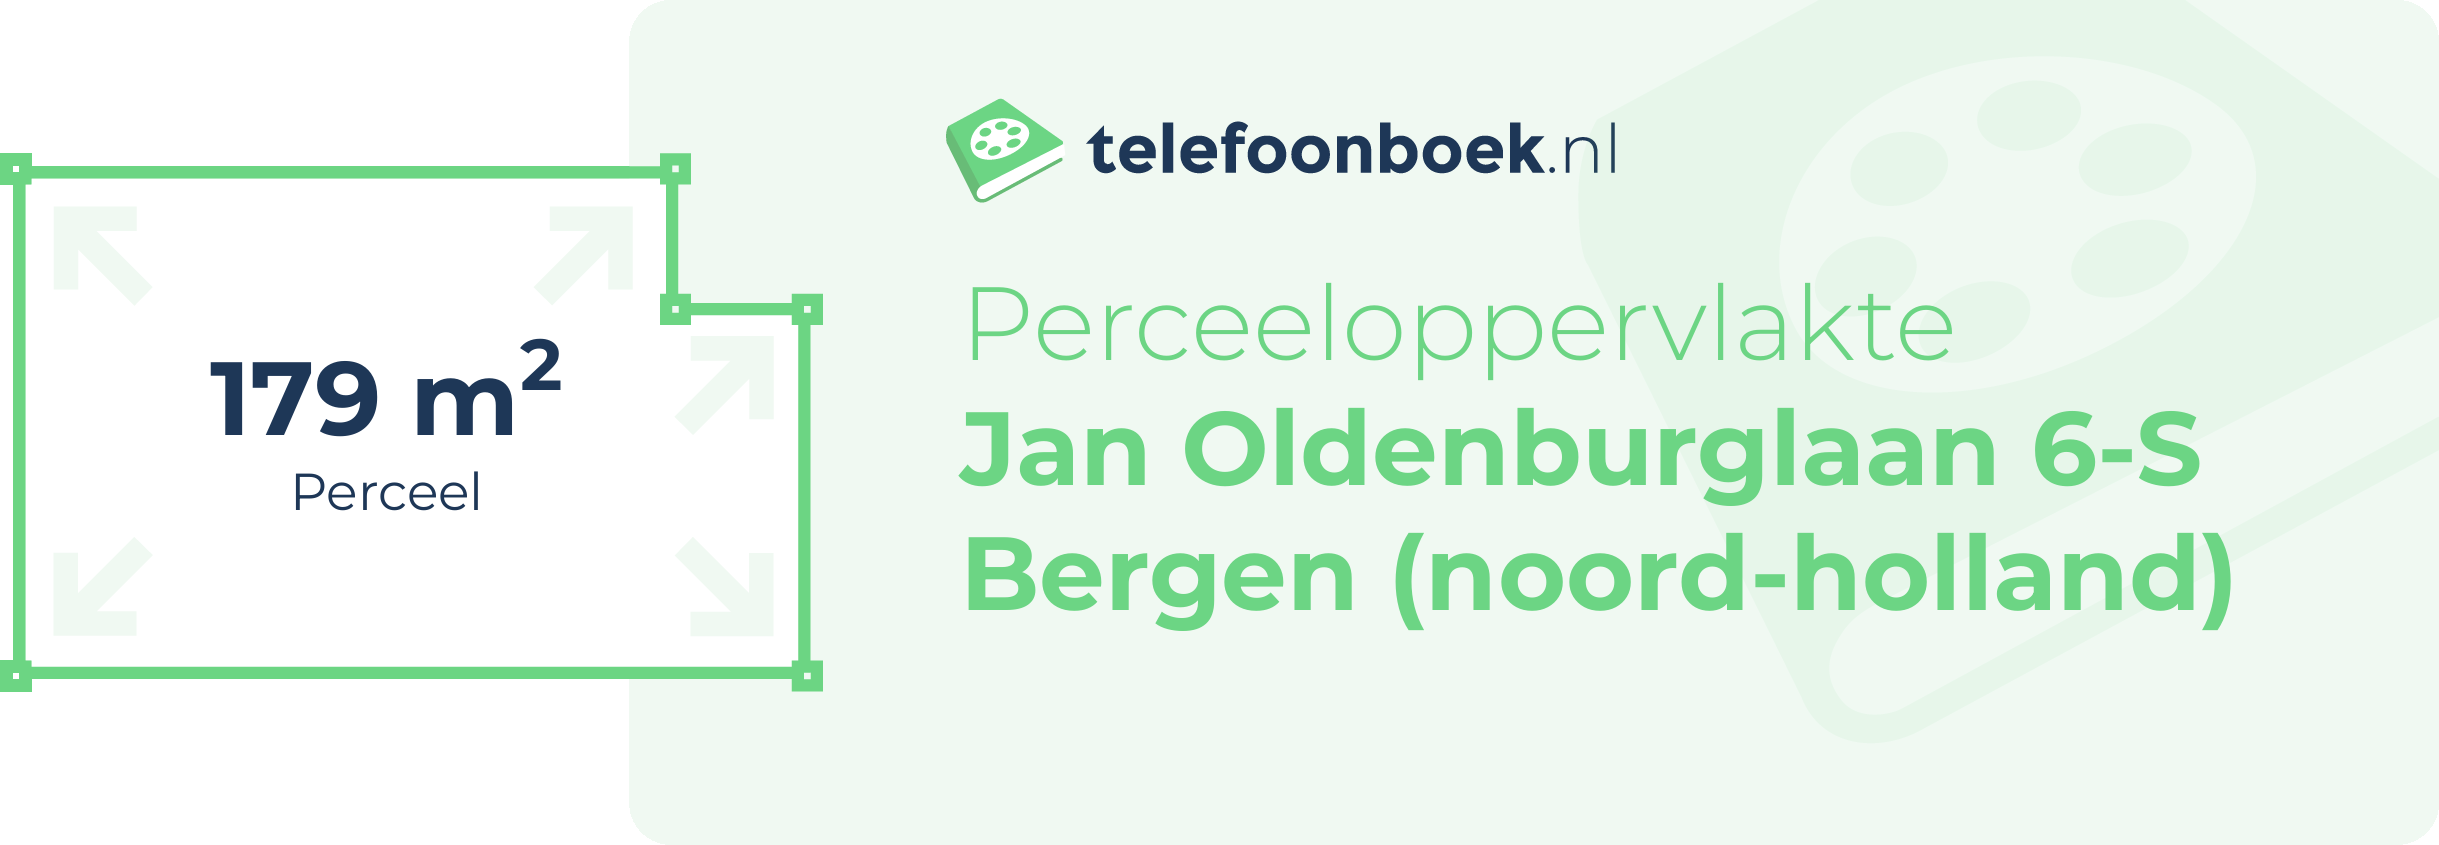 Perceeloppervlakte Jan Oldenburglaan 6-S Bergen (Noord-Holland)